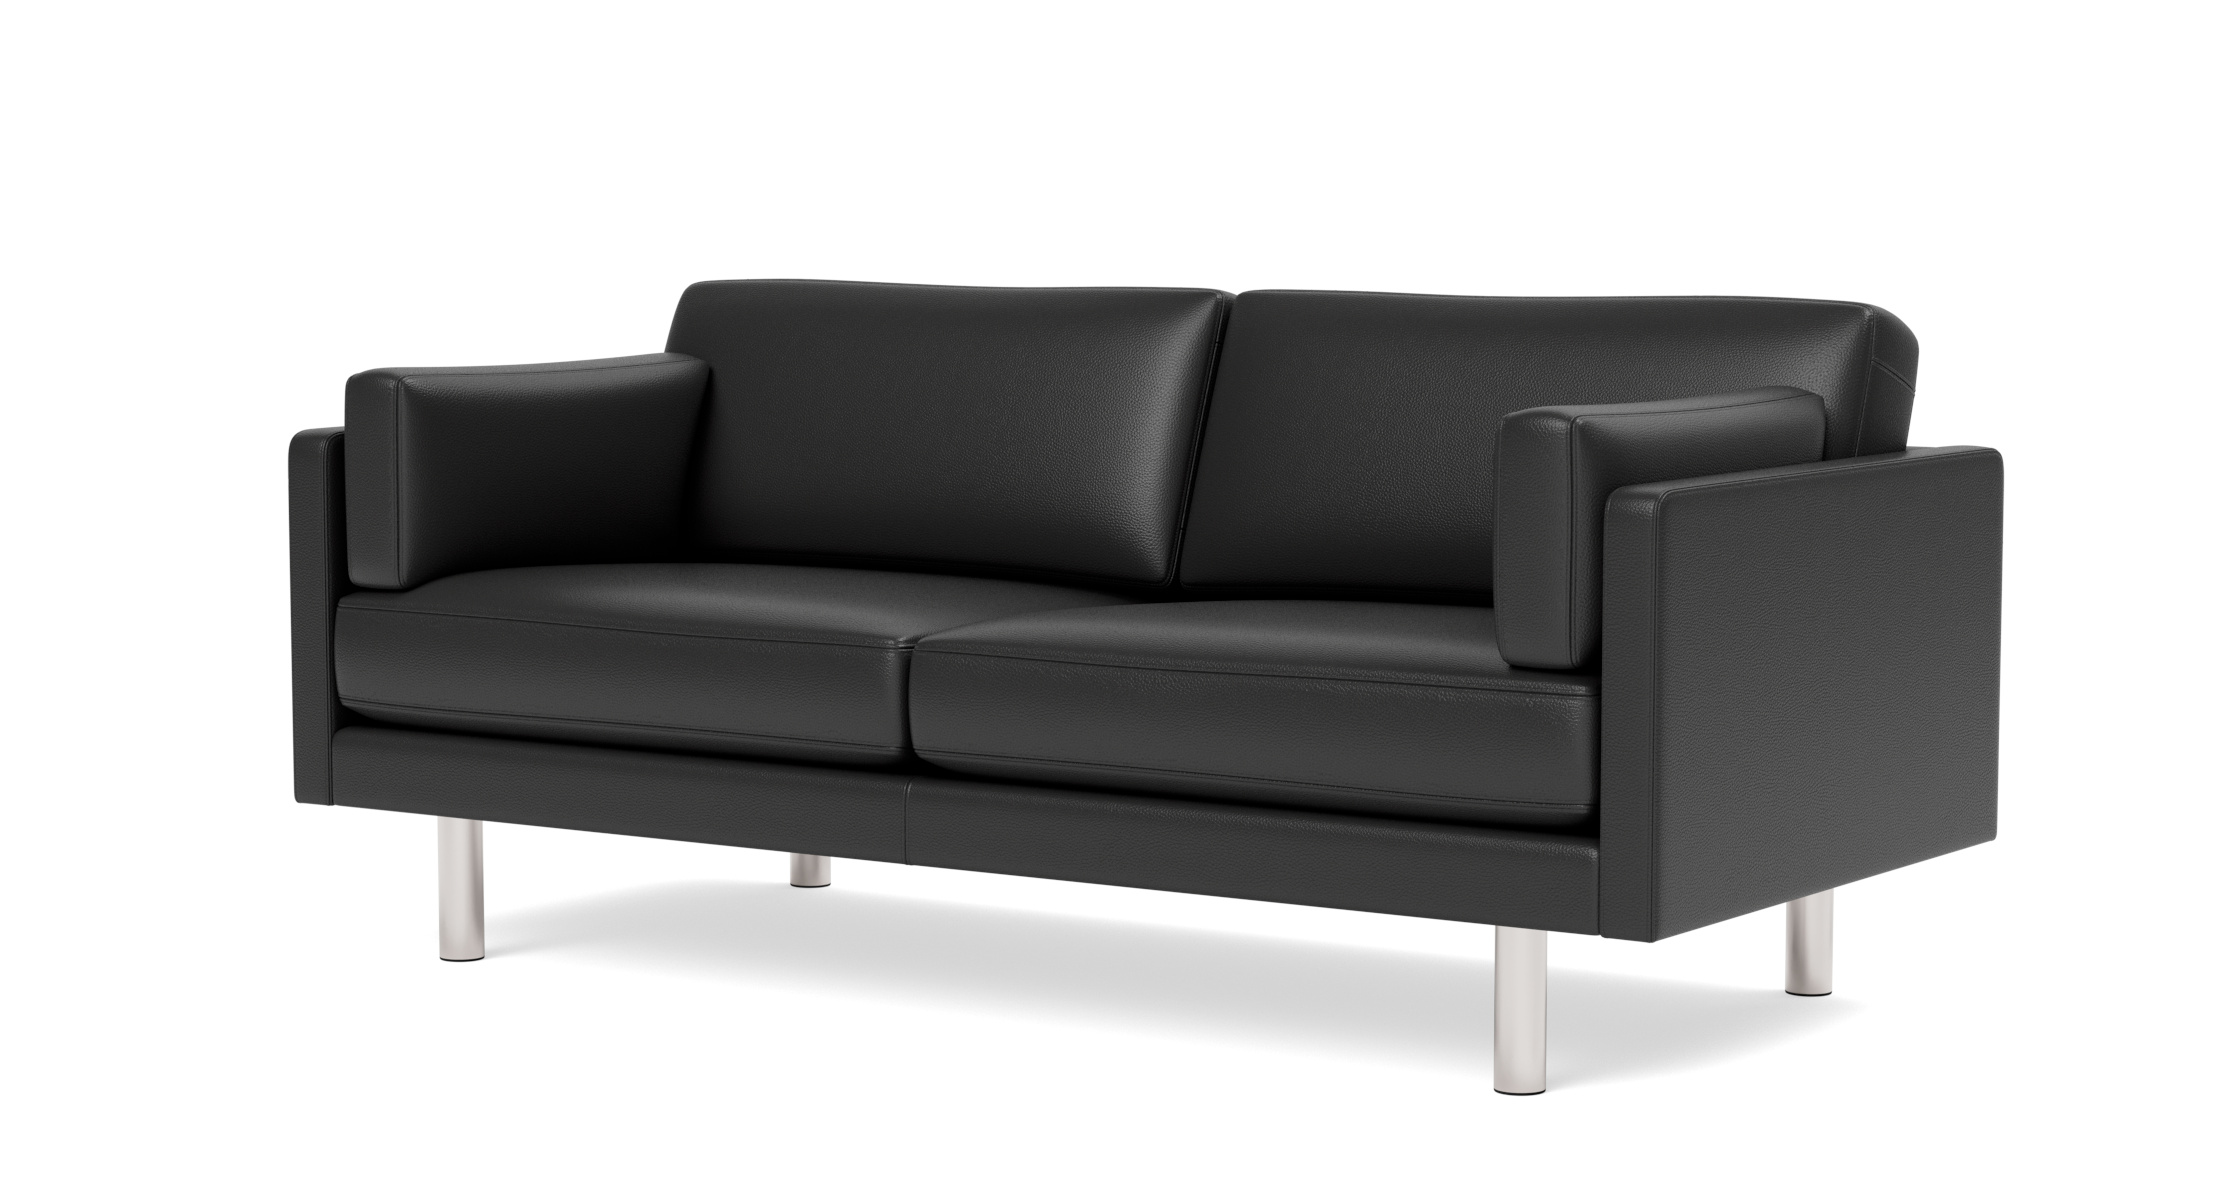 EJ220 Sofa 2-Sitzer, 86 cm, brushed chrom / leder omni 301 schwarz